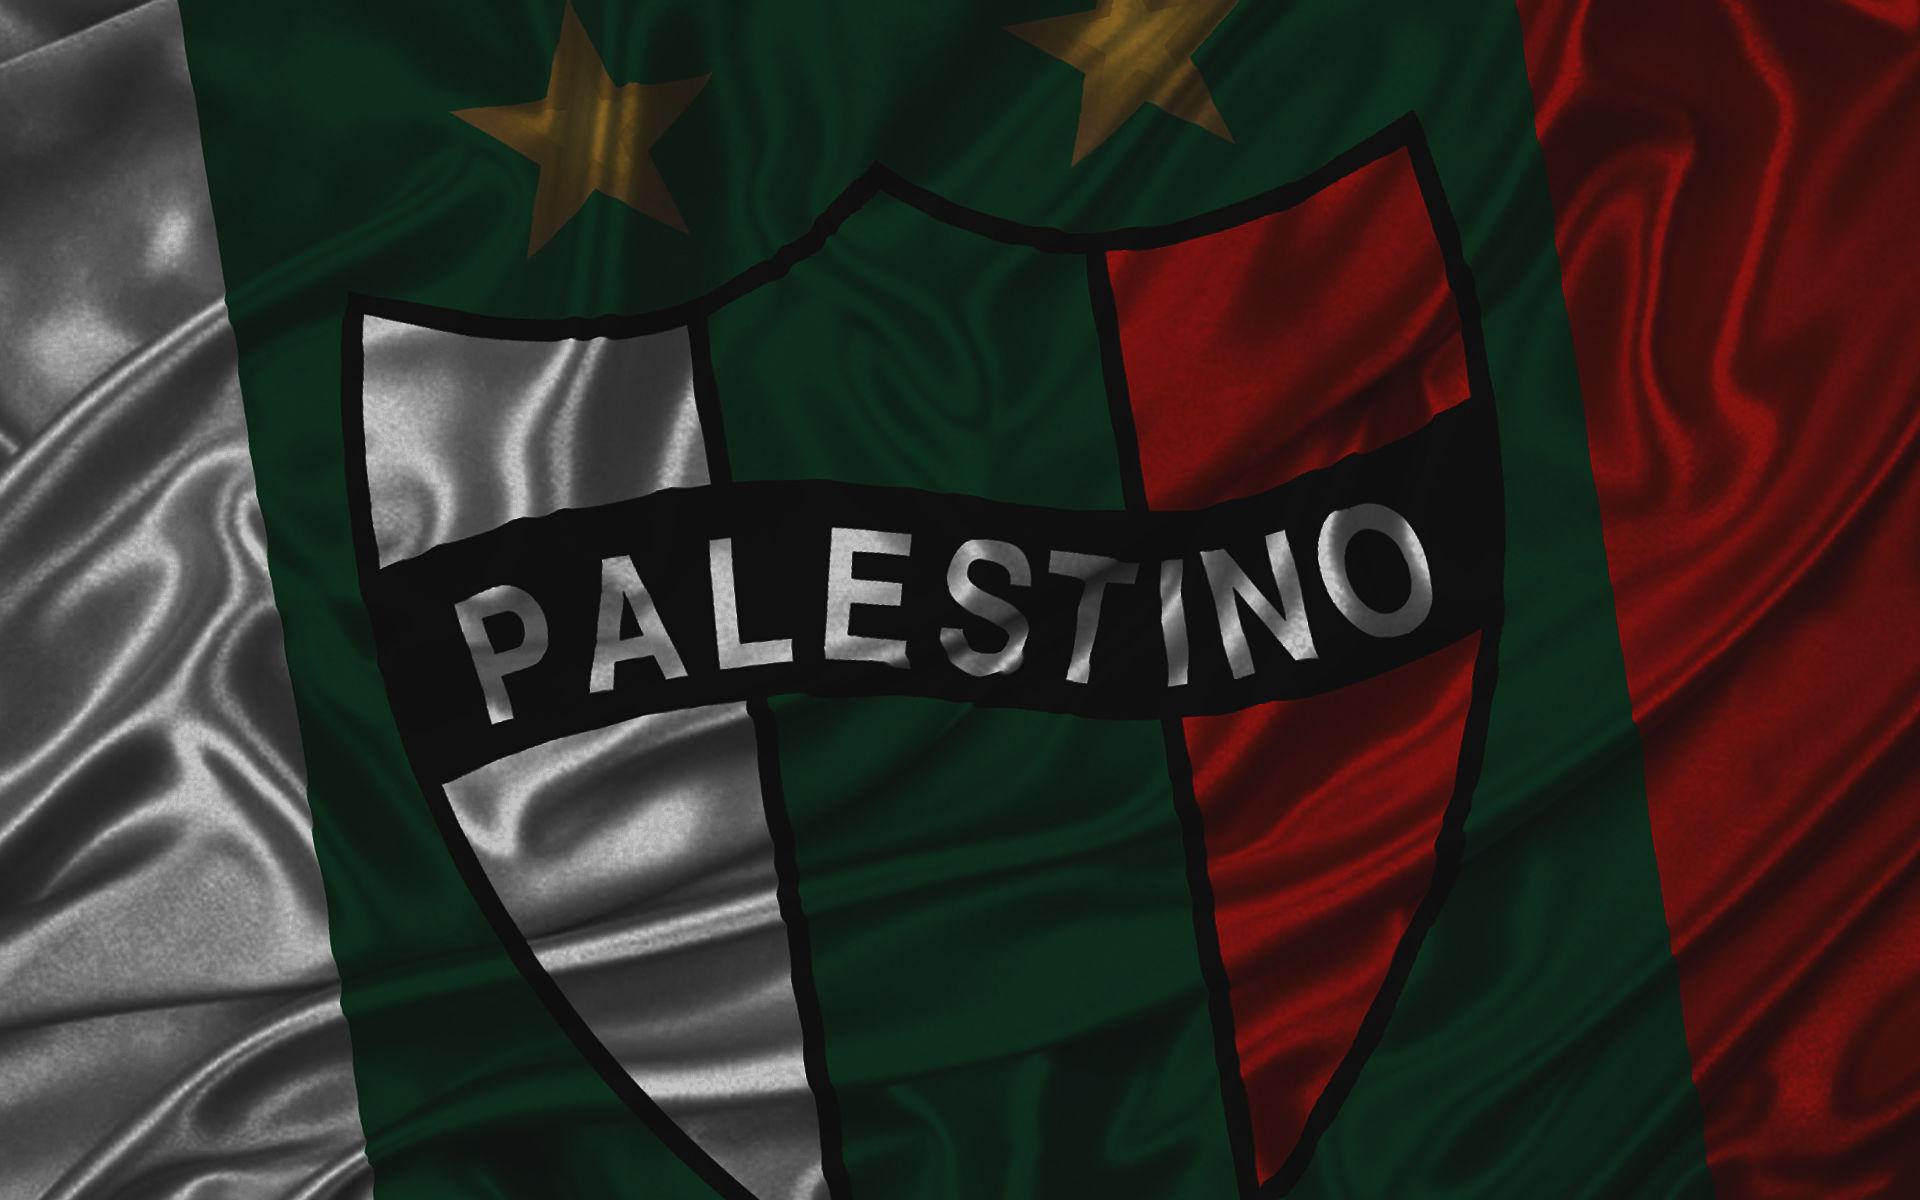 Palestino_1920x1200_opt